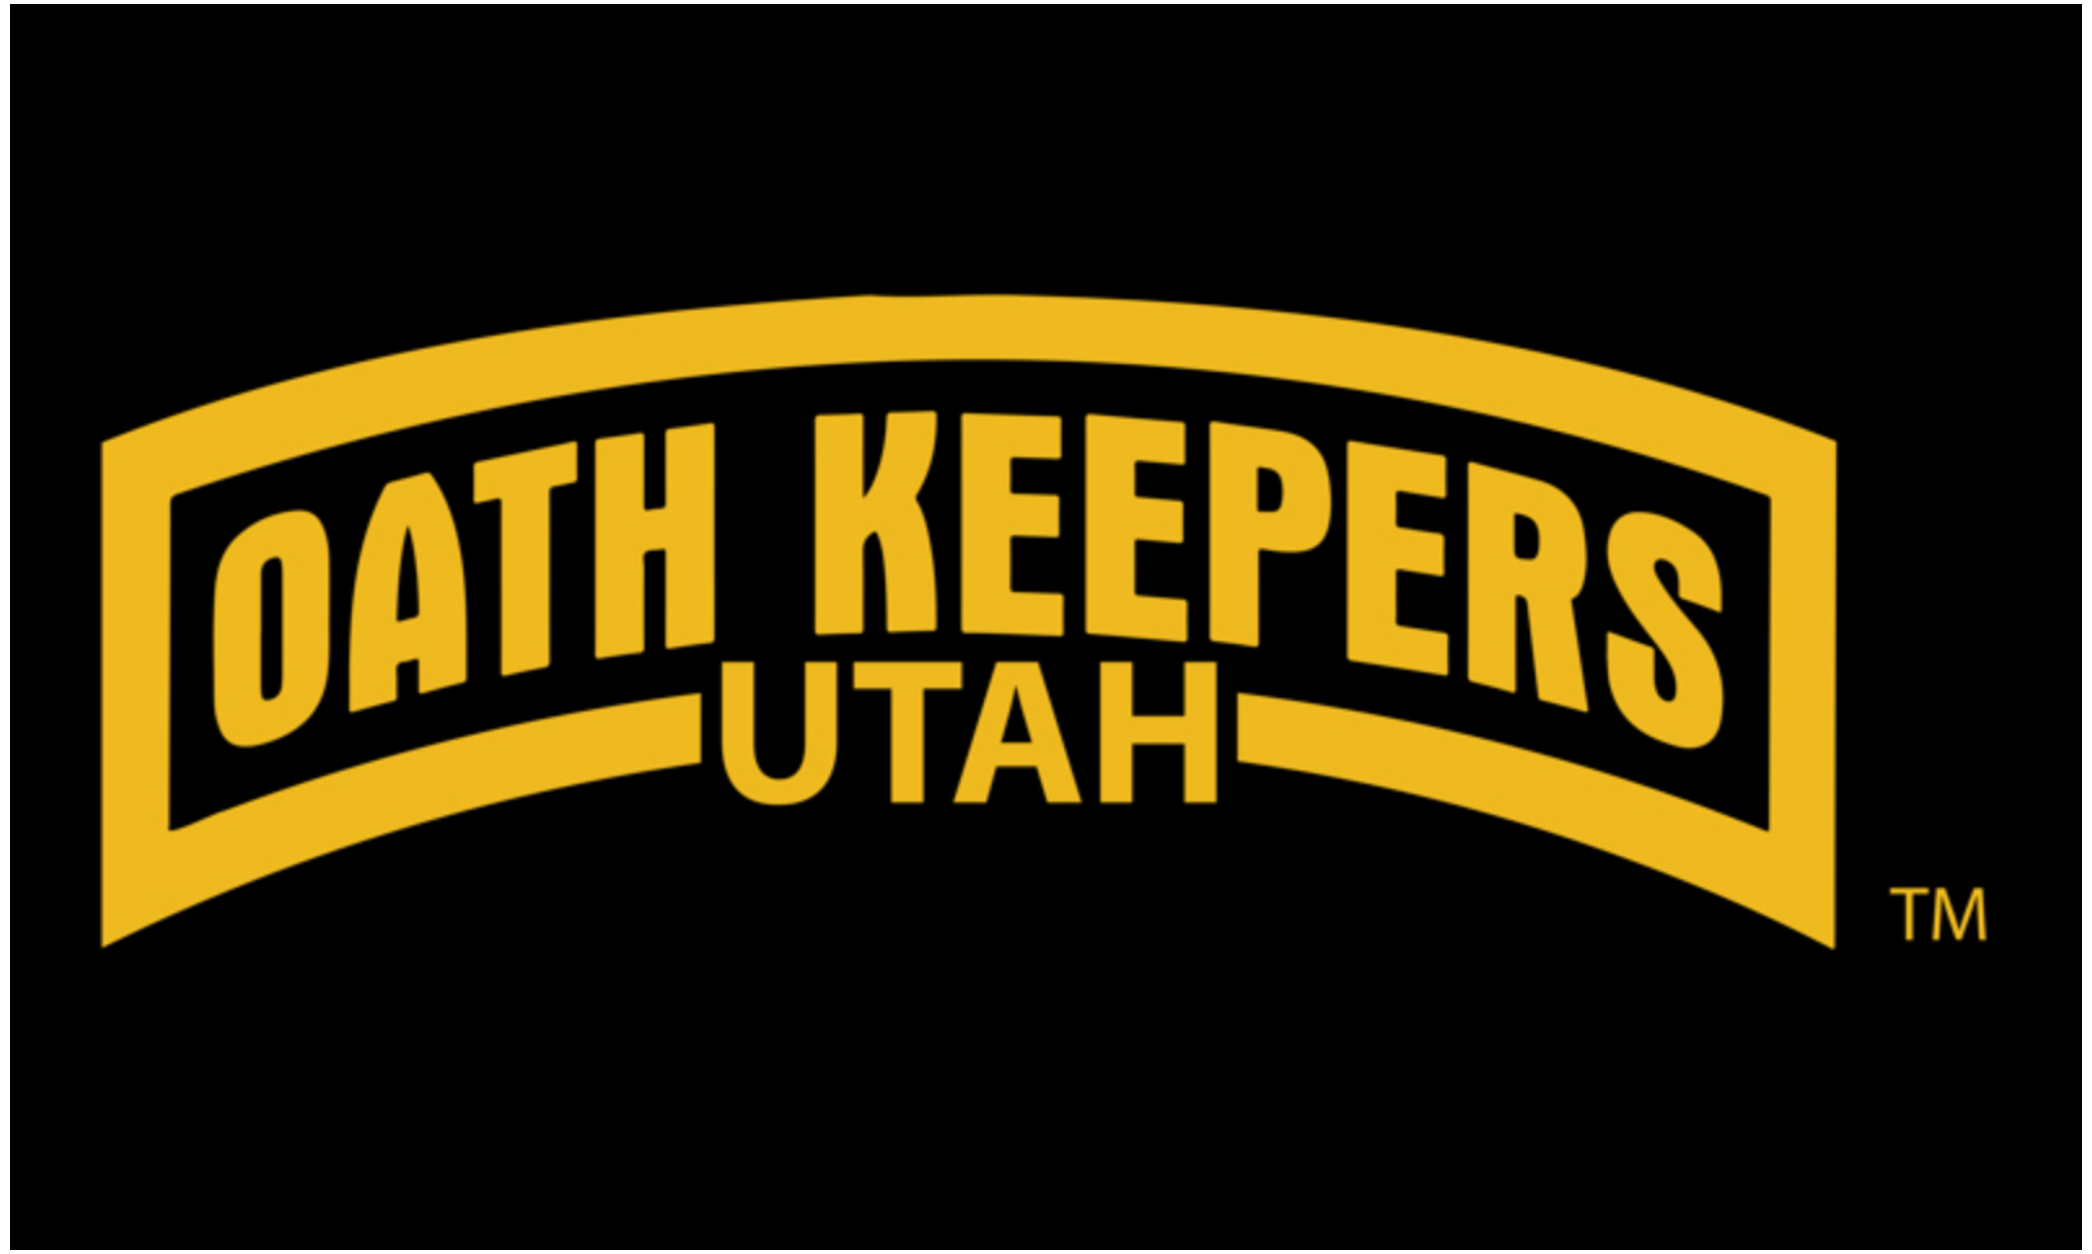 Oath Keepers Flag Utah